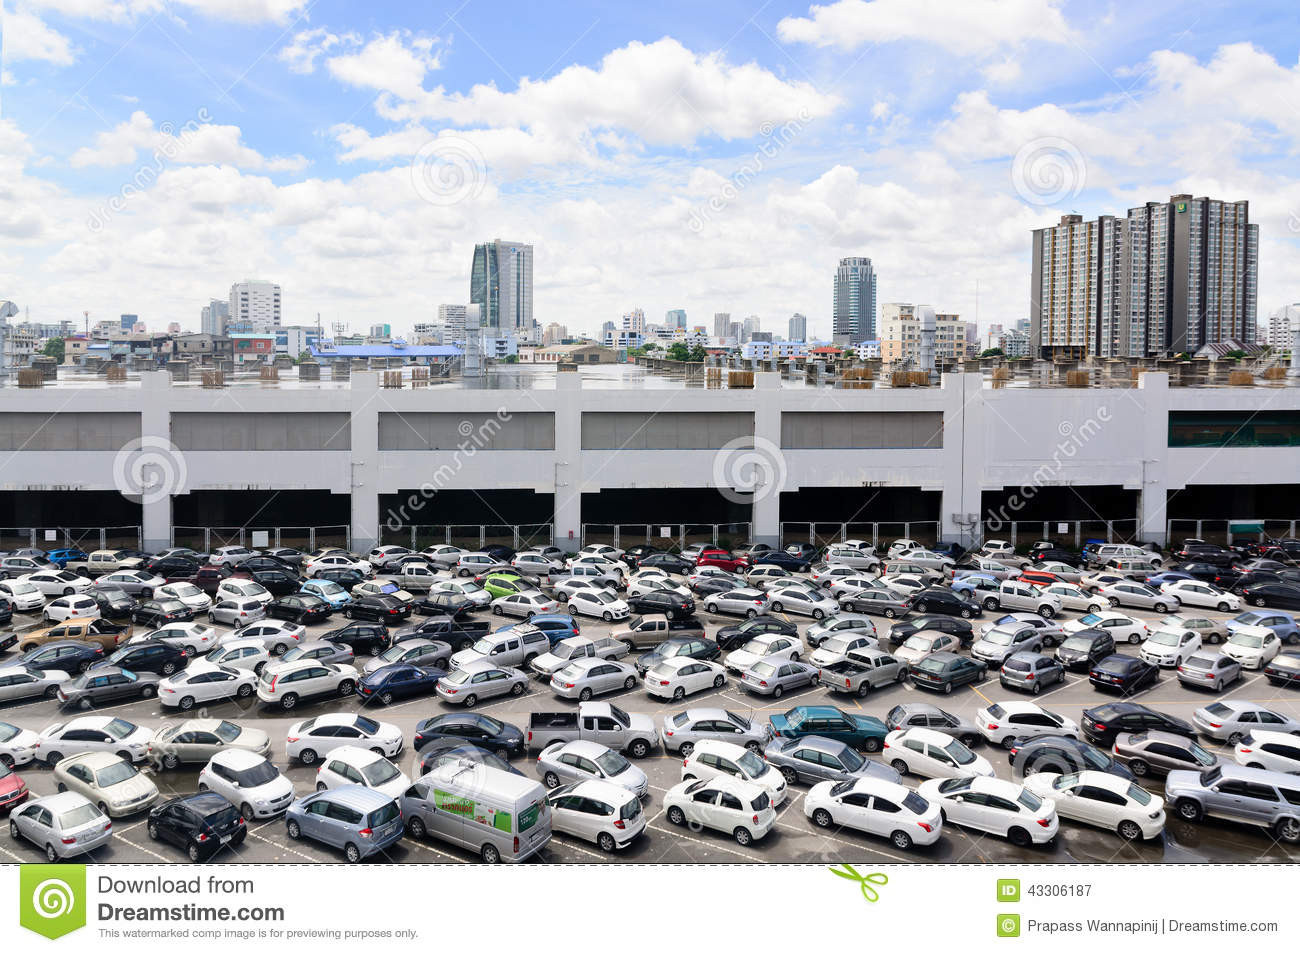 Nhu cầu sản xuất ô tô tại Thái Lan tăng cao. Ảnh: dreamstine